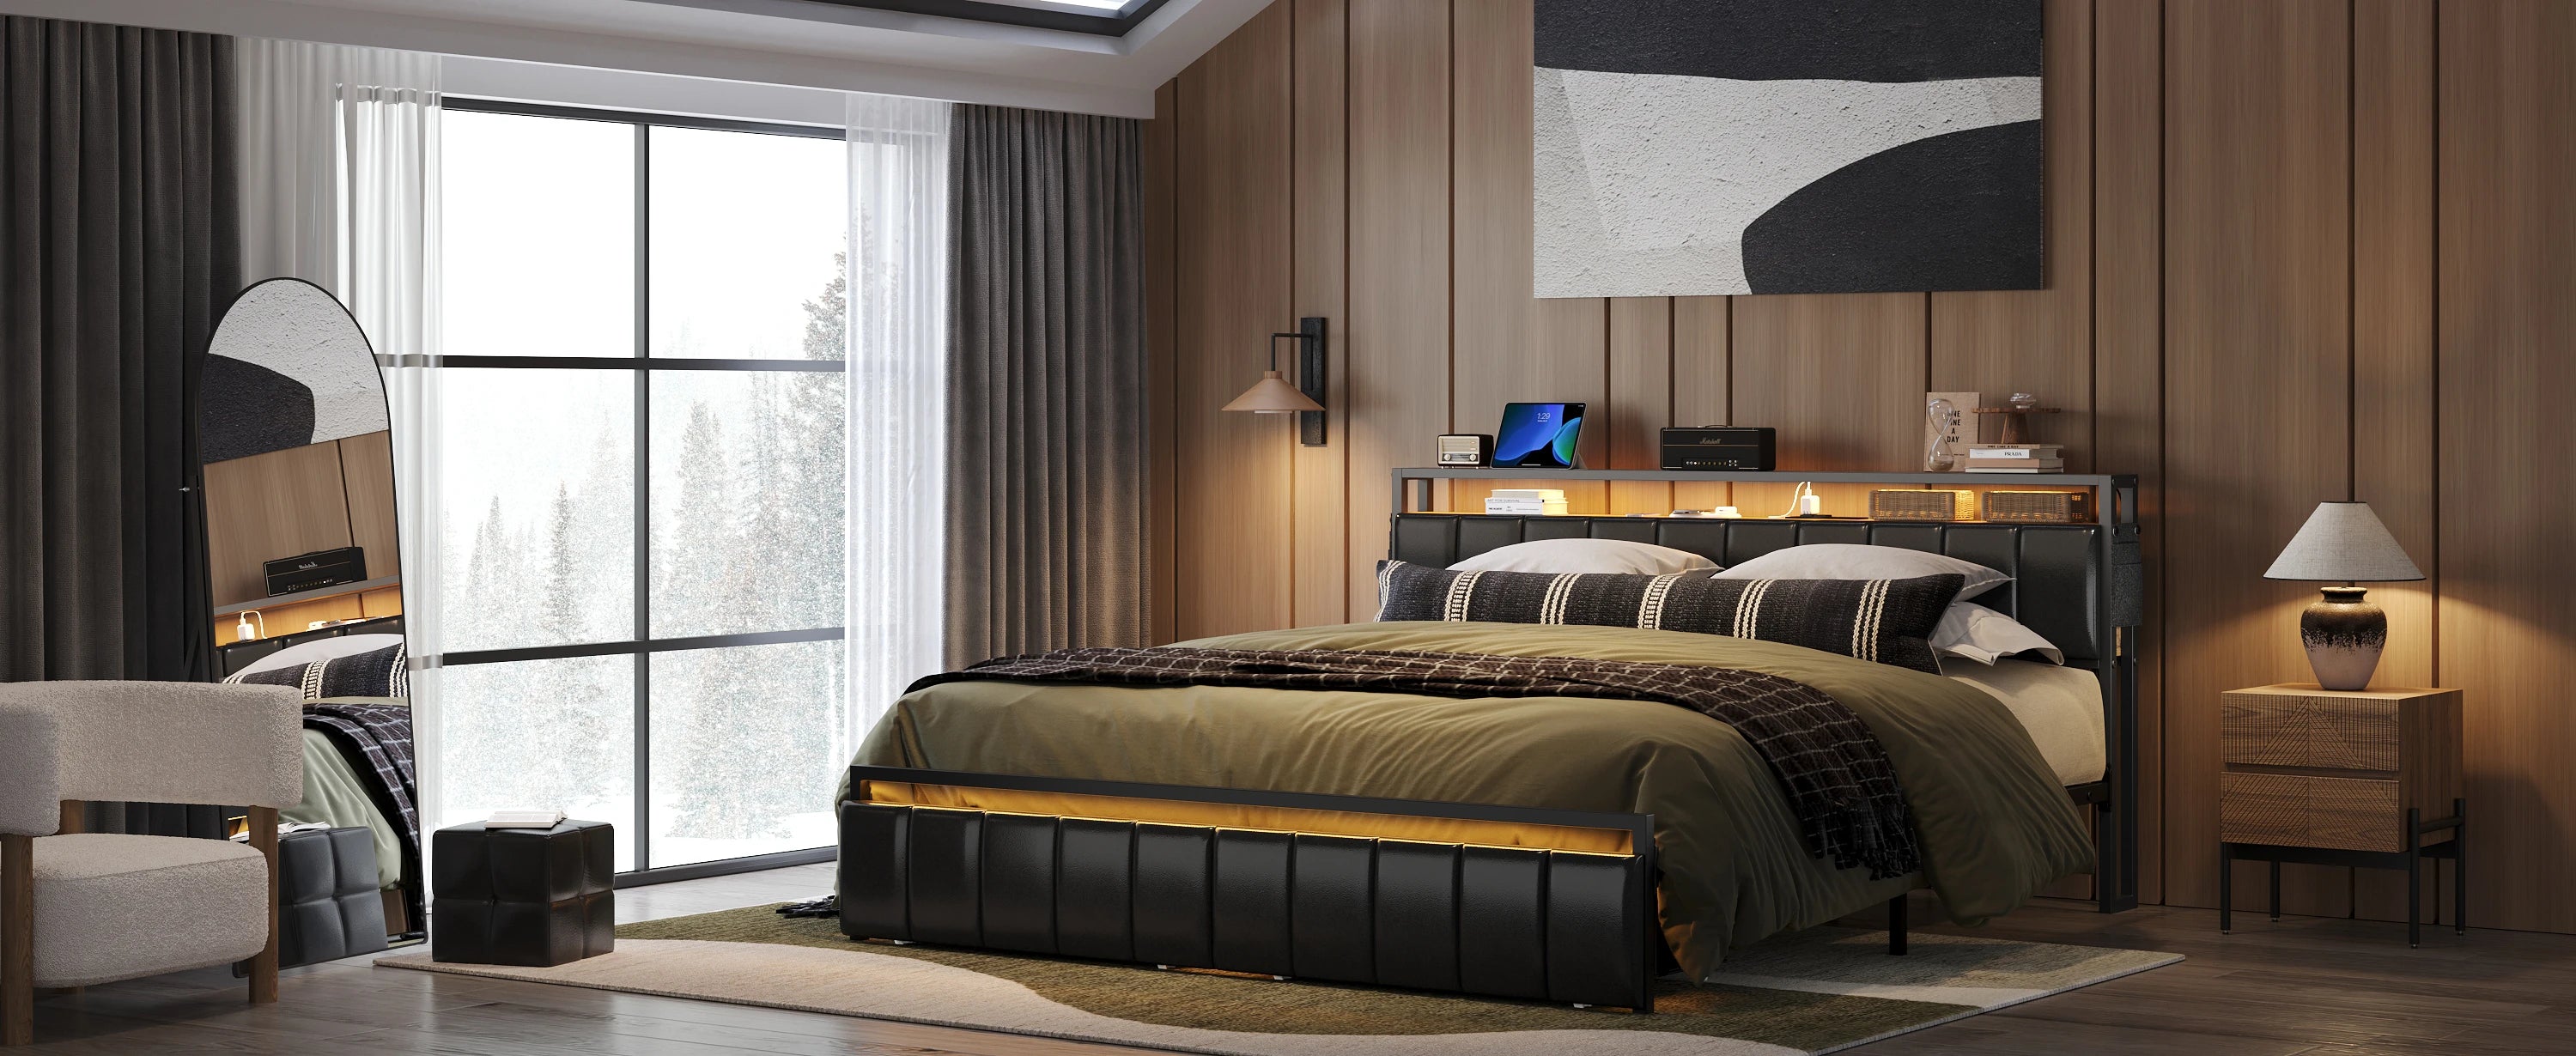 Bestier-Bedroom-Furniture Bestier